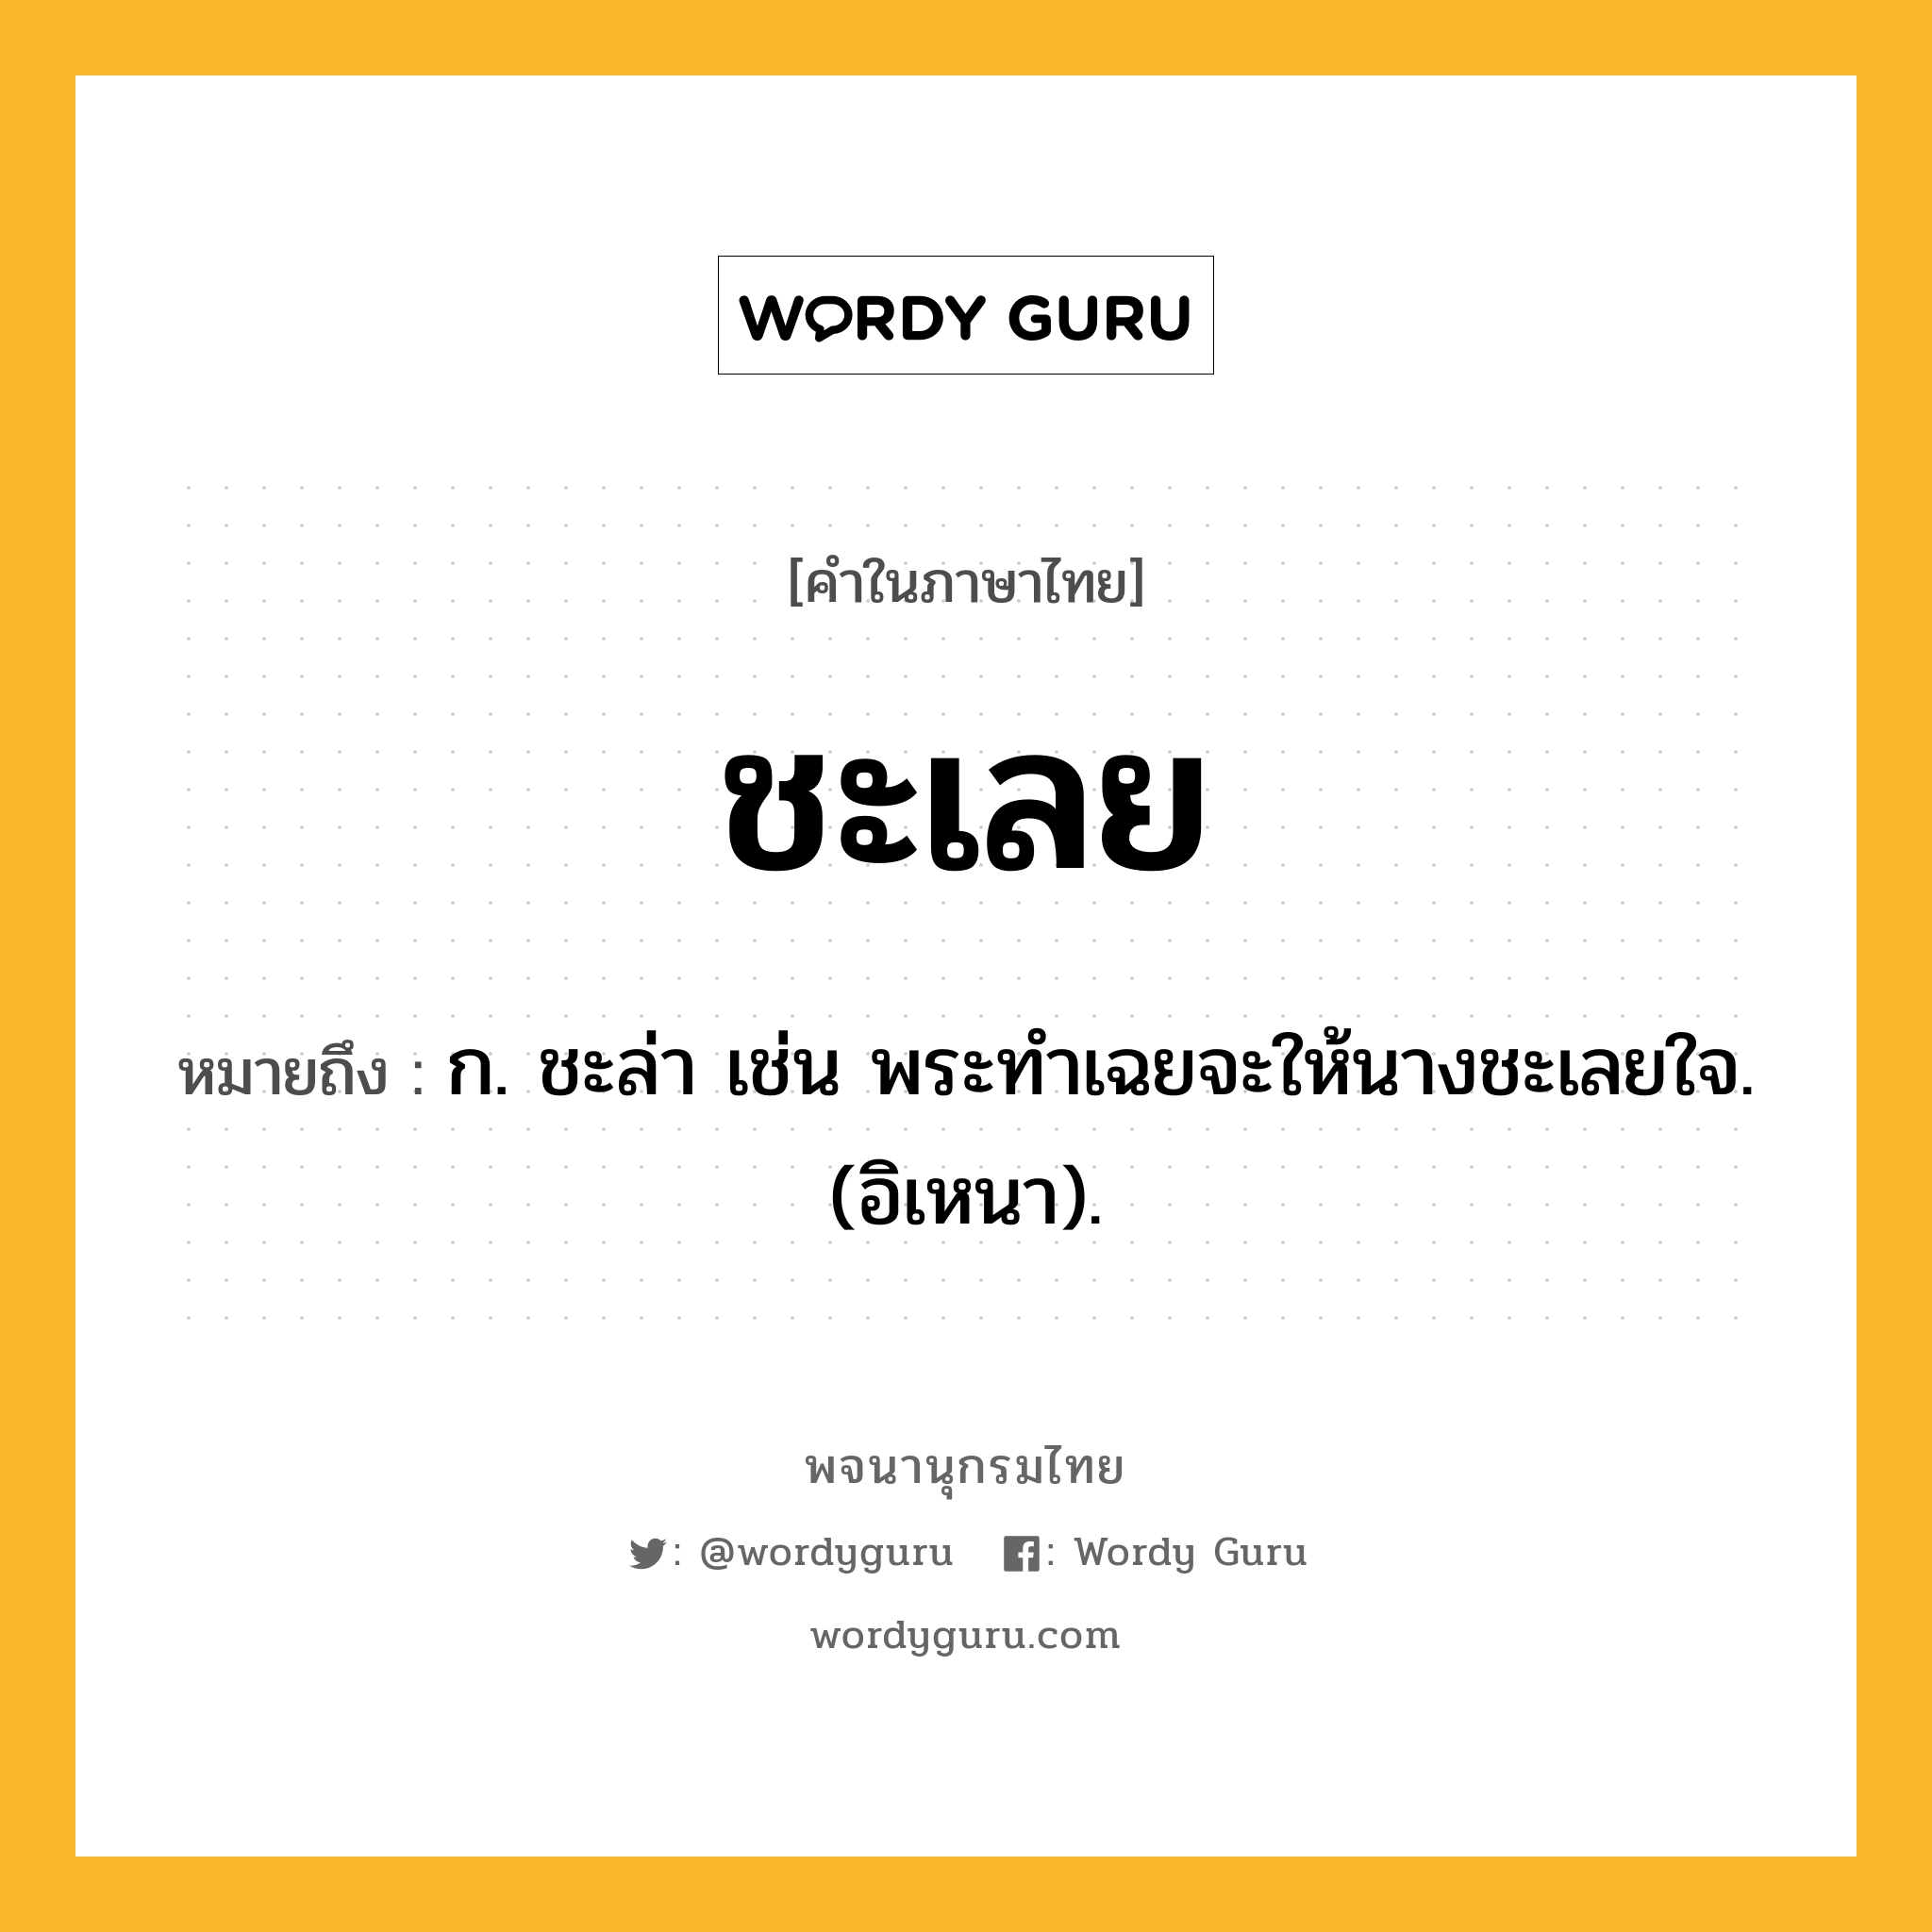 ชะเลย หมายถึงอะไร?, คำในภาษาไทย ชะเลย หมายถึง ก. ชะล่า เช่น พระทําเฉยจะให้นางชะเลยใจ. (อิเหนา).